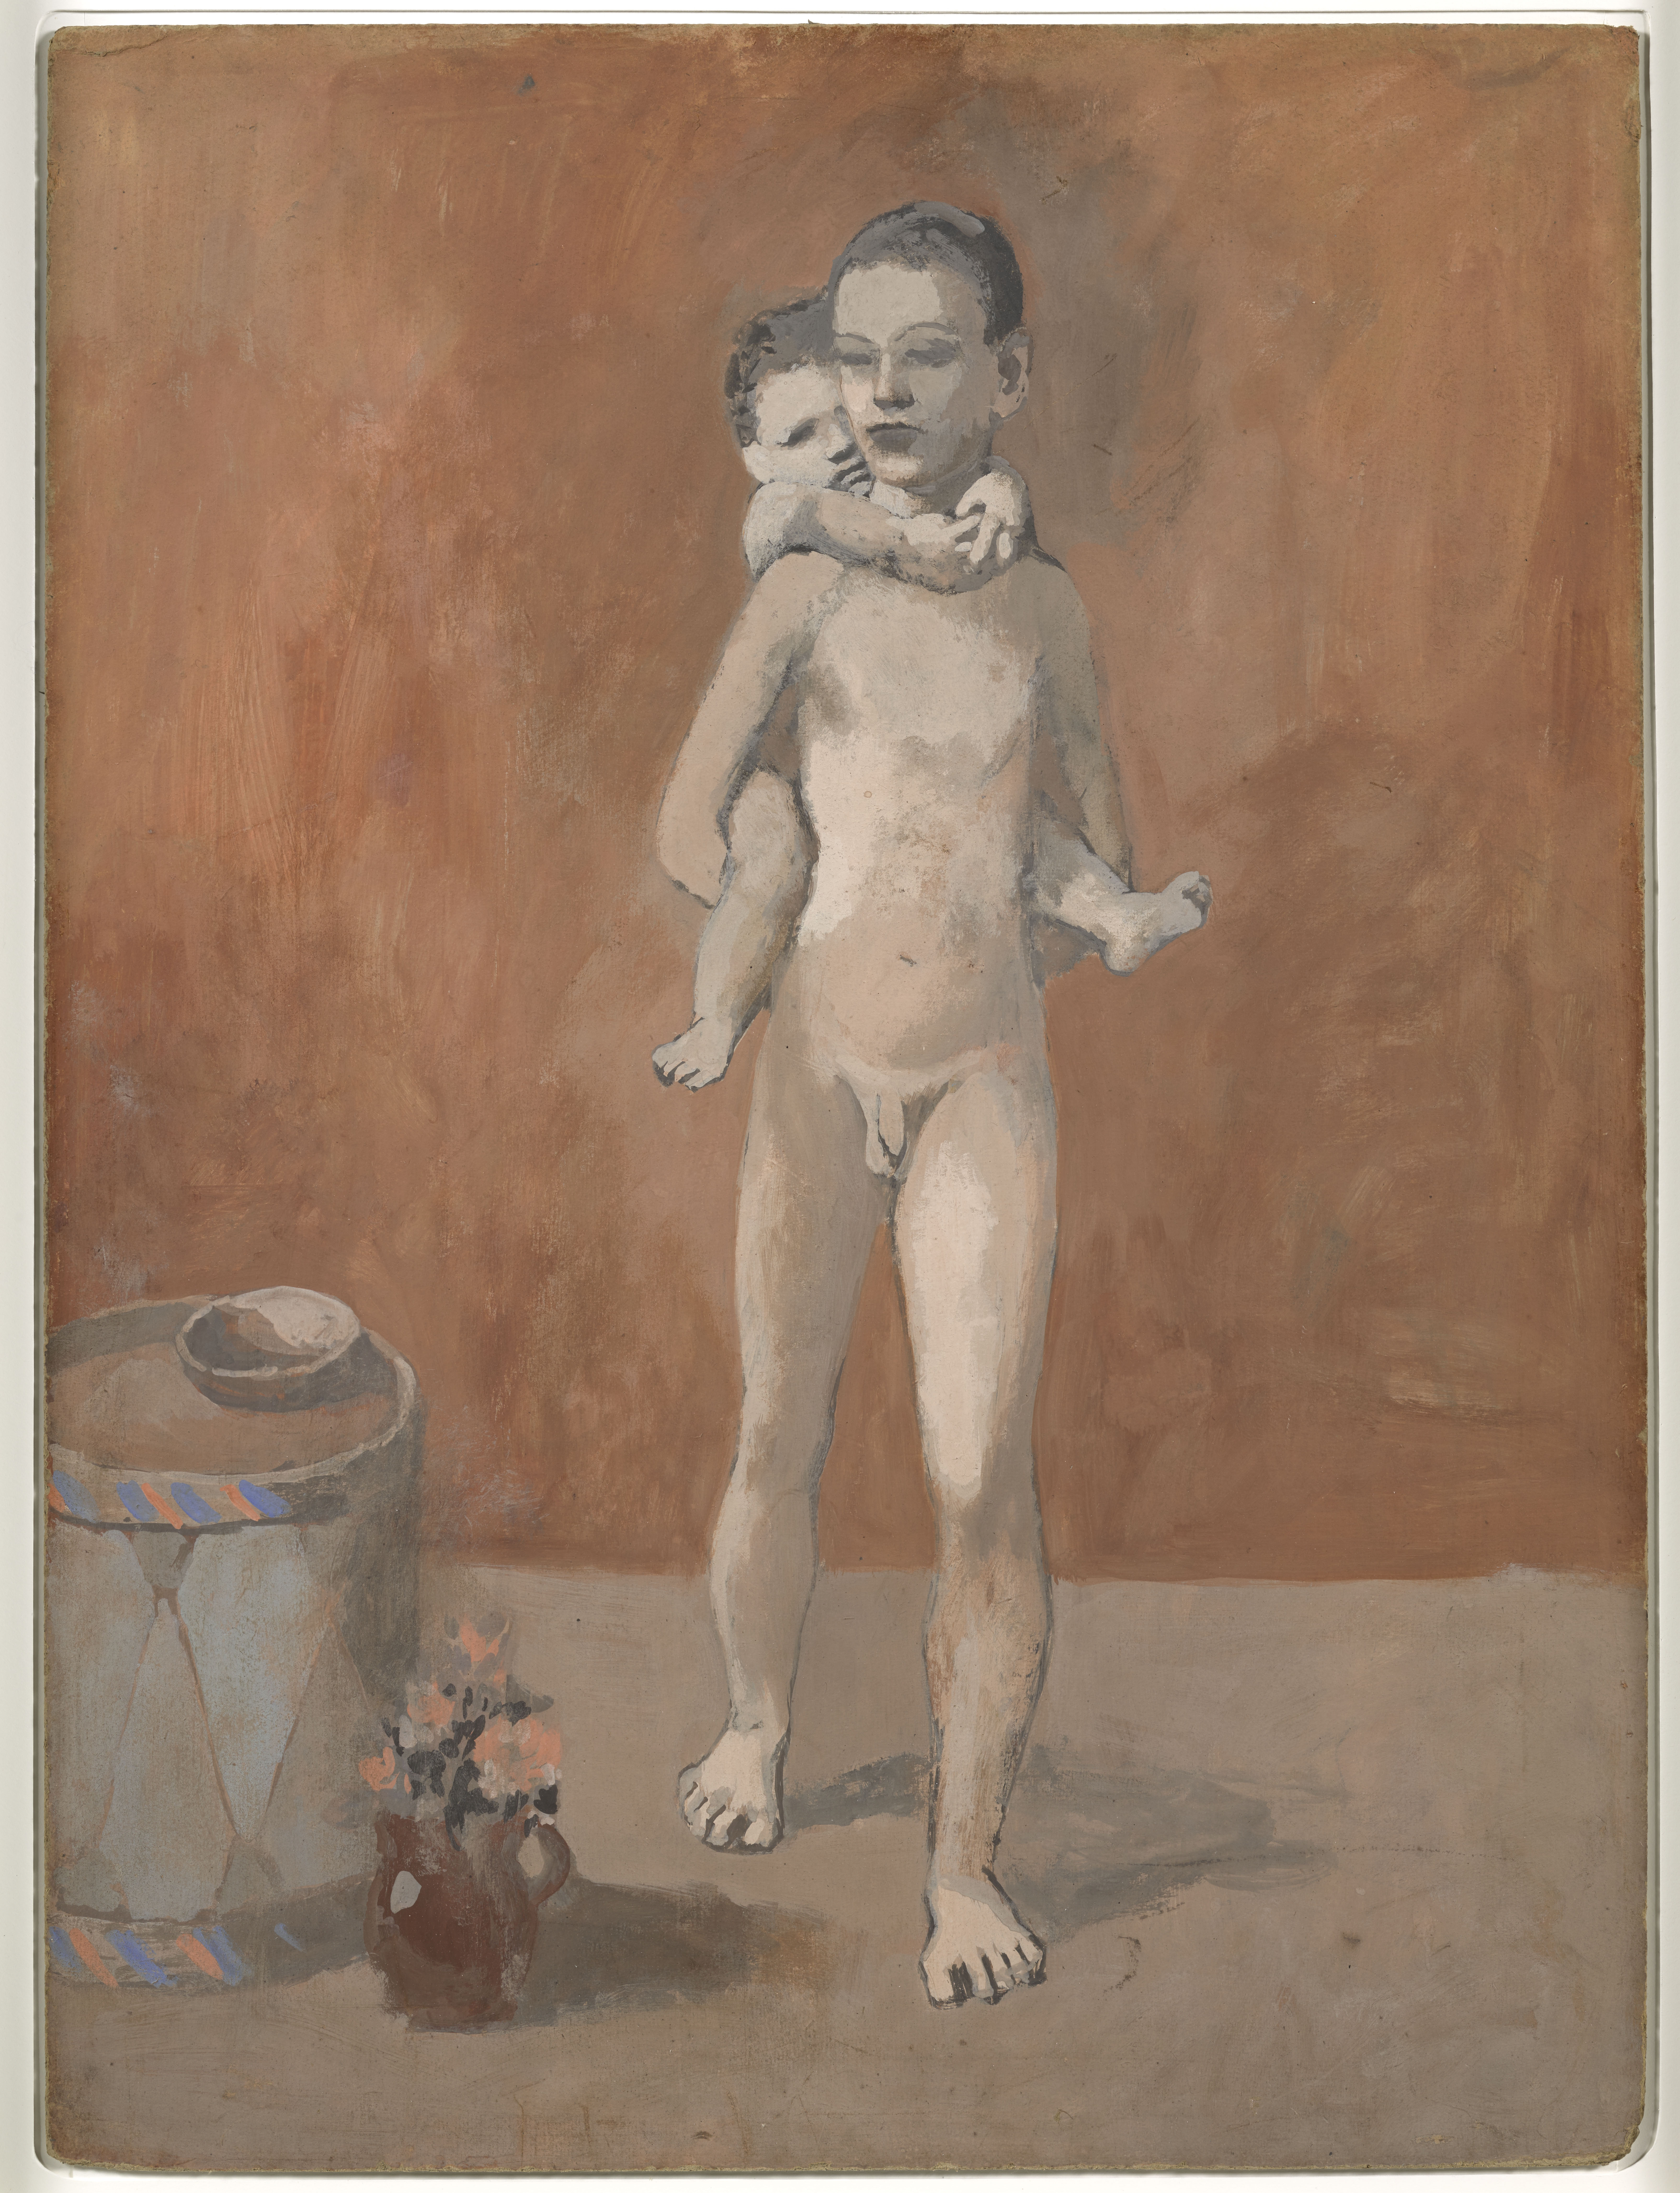 《兄弟俩》，戈索尔，1906年夏，纸板水粉画，80x59cm，国立巴黎毕加索博物馆，版权声明 Succession Picasso 2019 